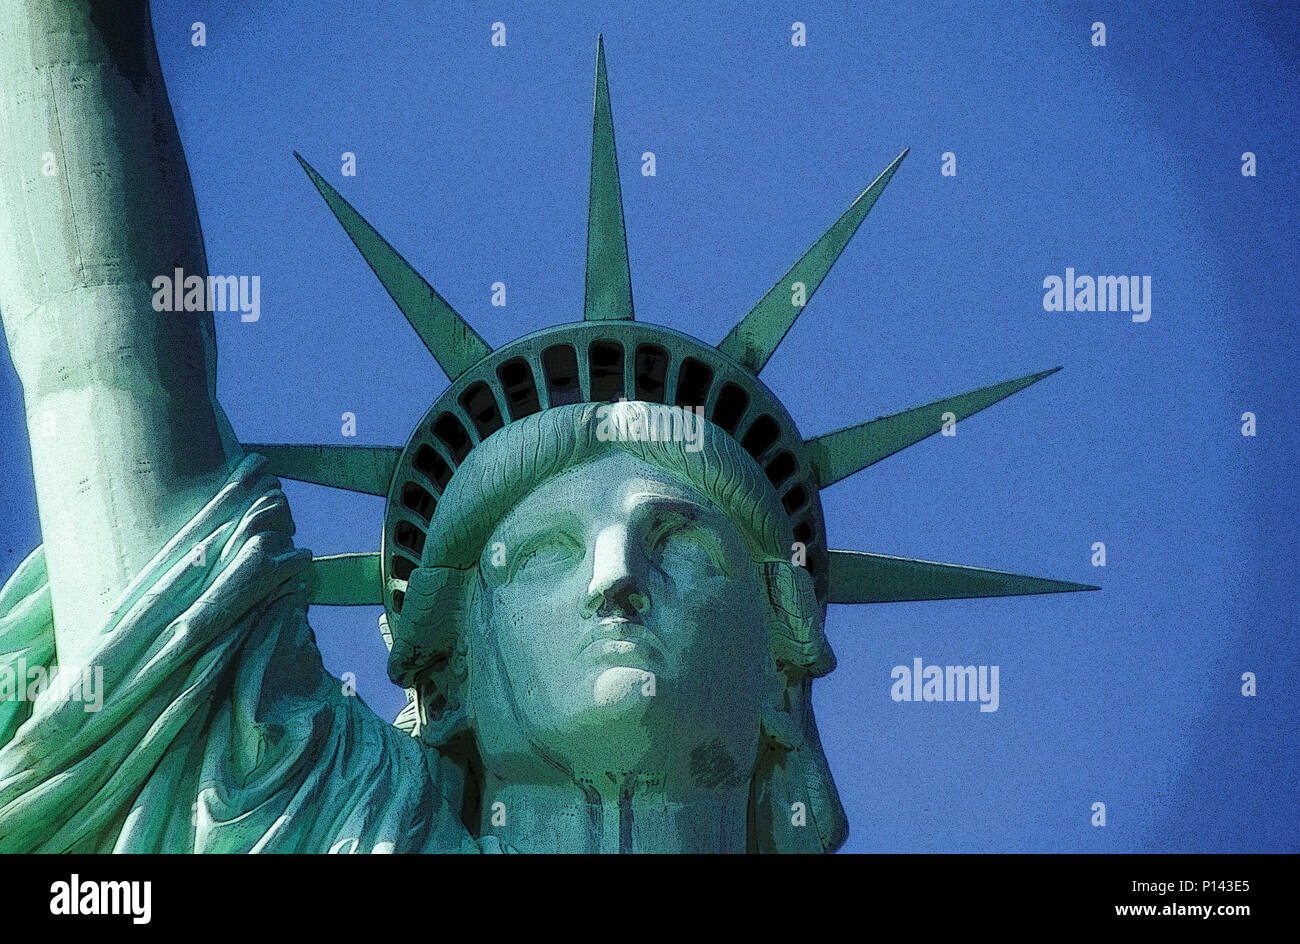 Statue de la liberté, près de la face et de la couronne à sept branches, New York, NY, USA Banque D'Images